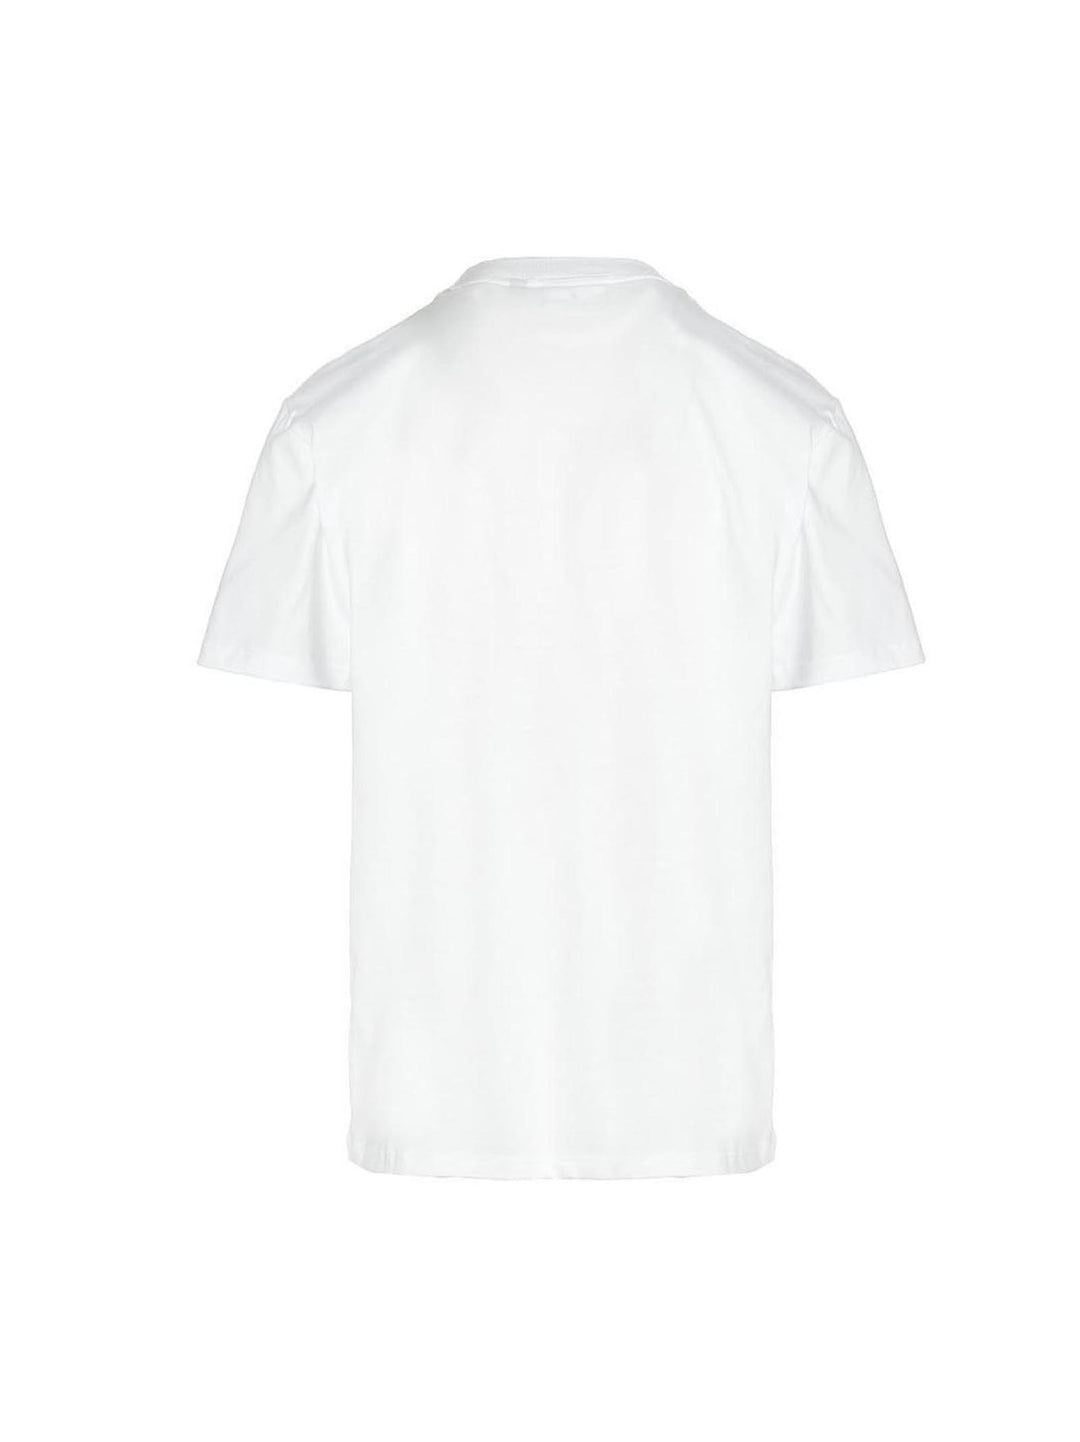 'Weirdo' T Shirt Bianco